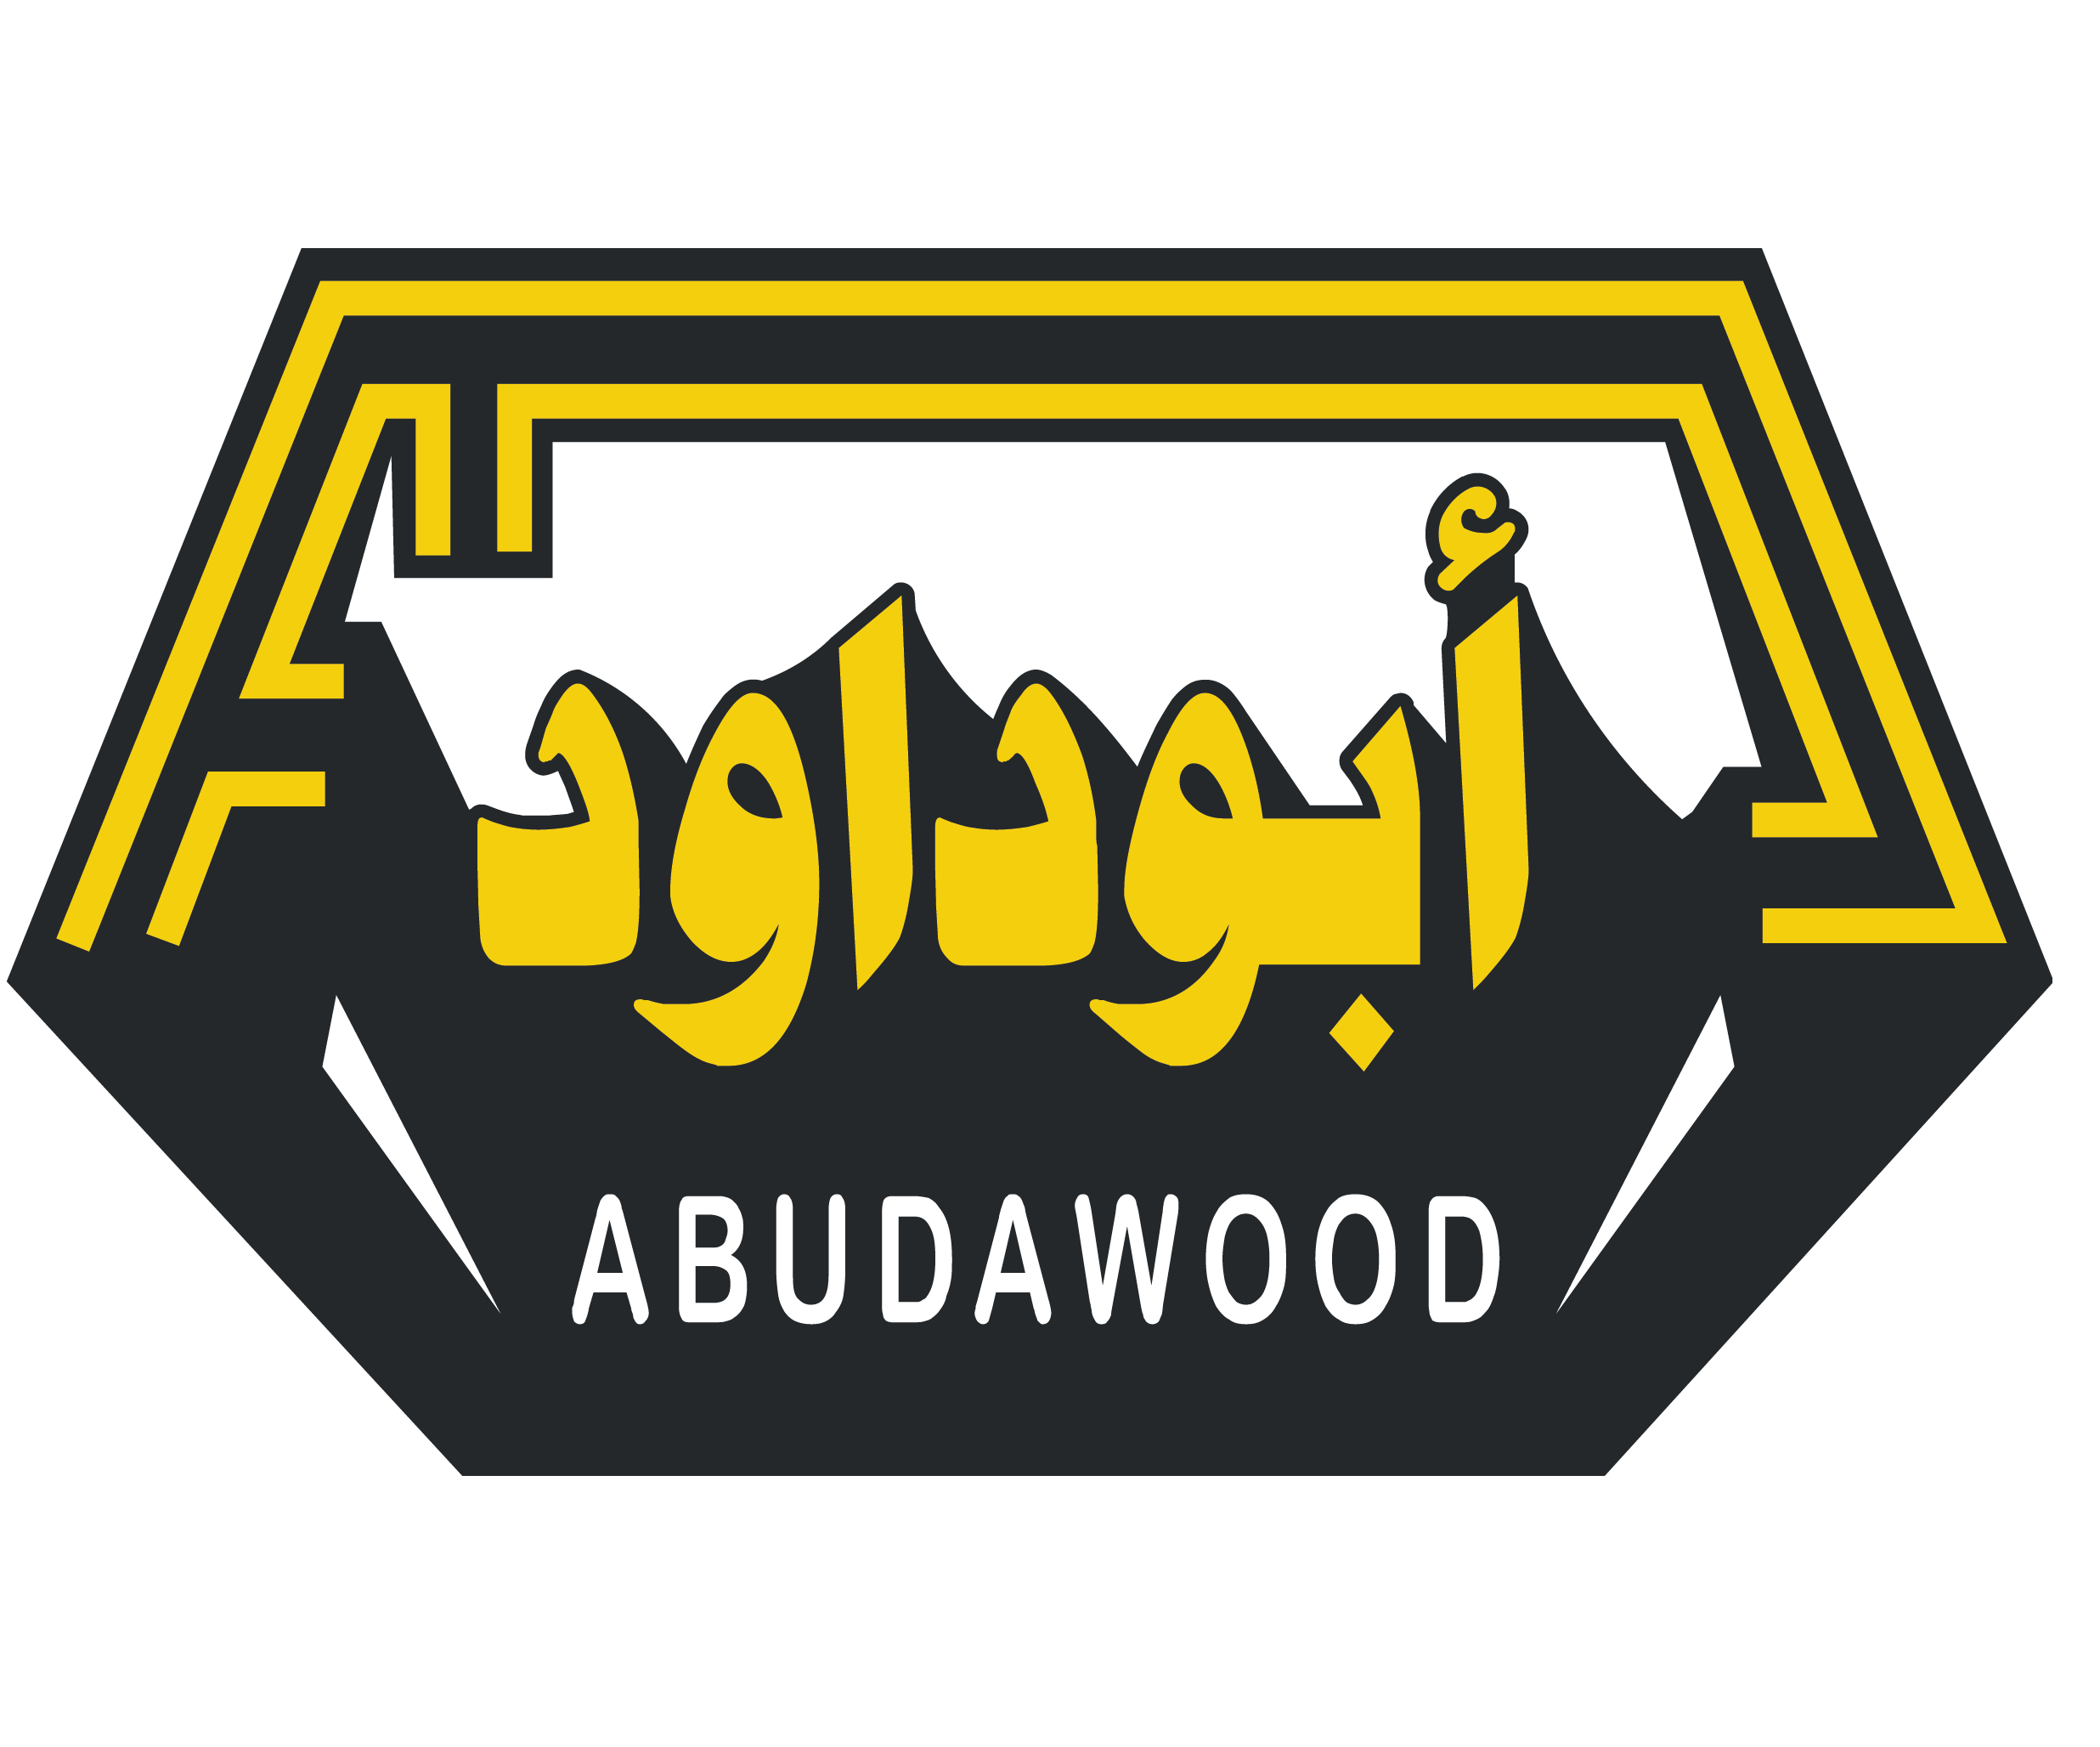 Abudawood